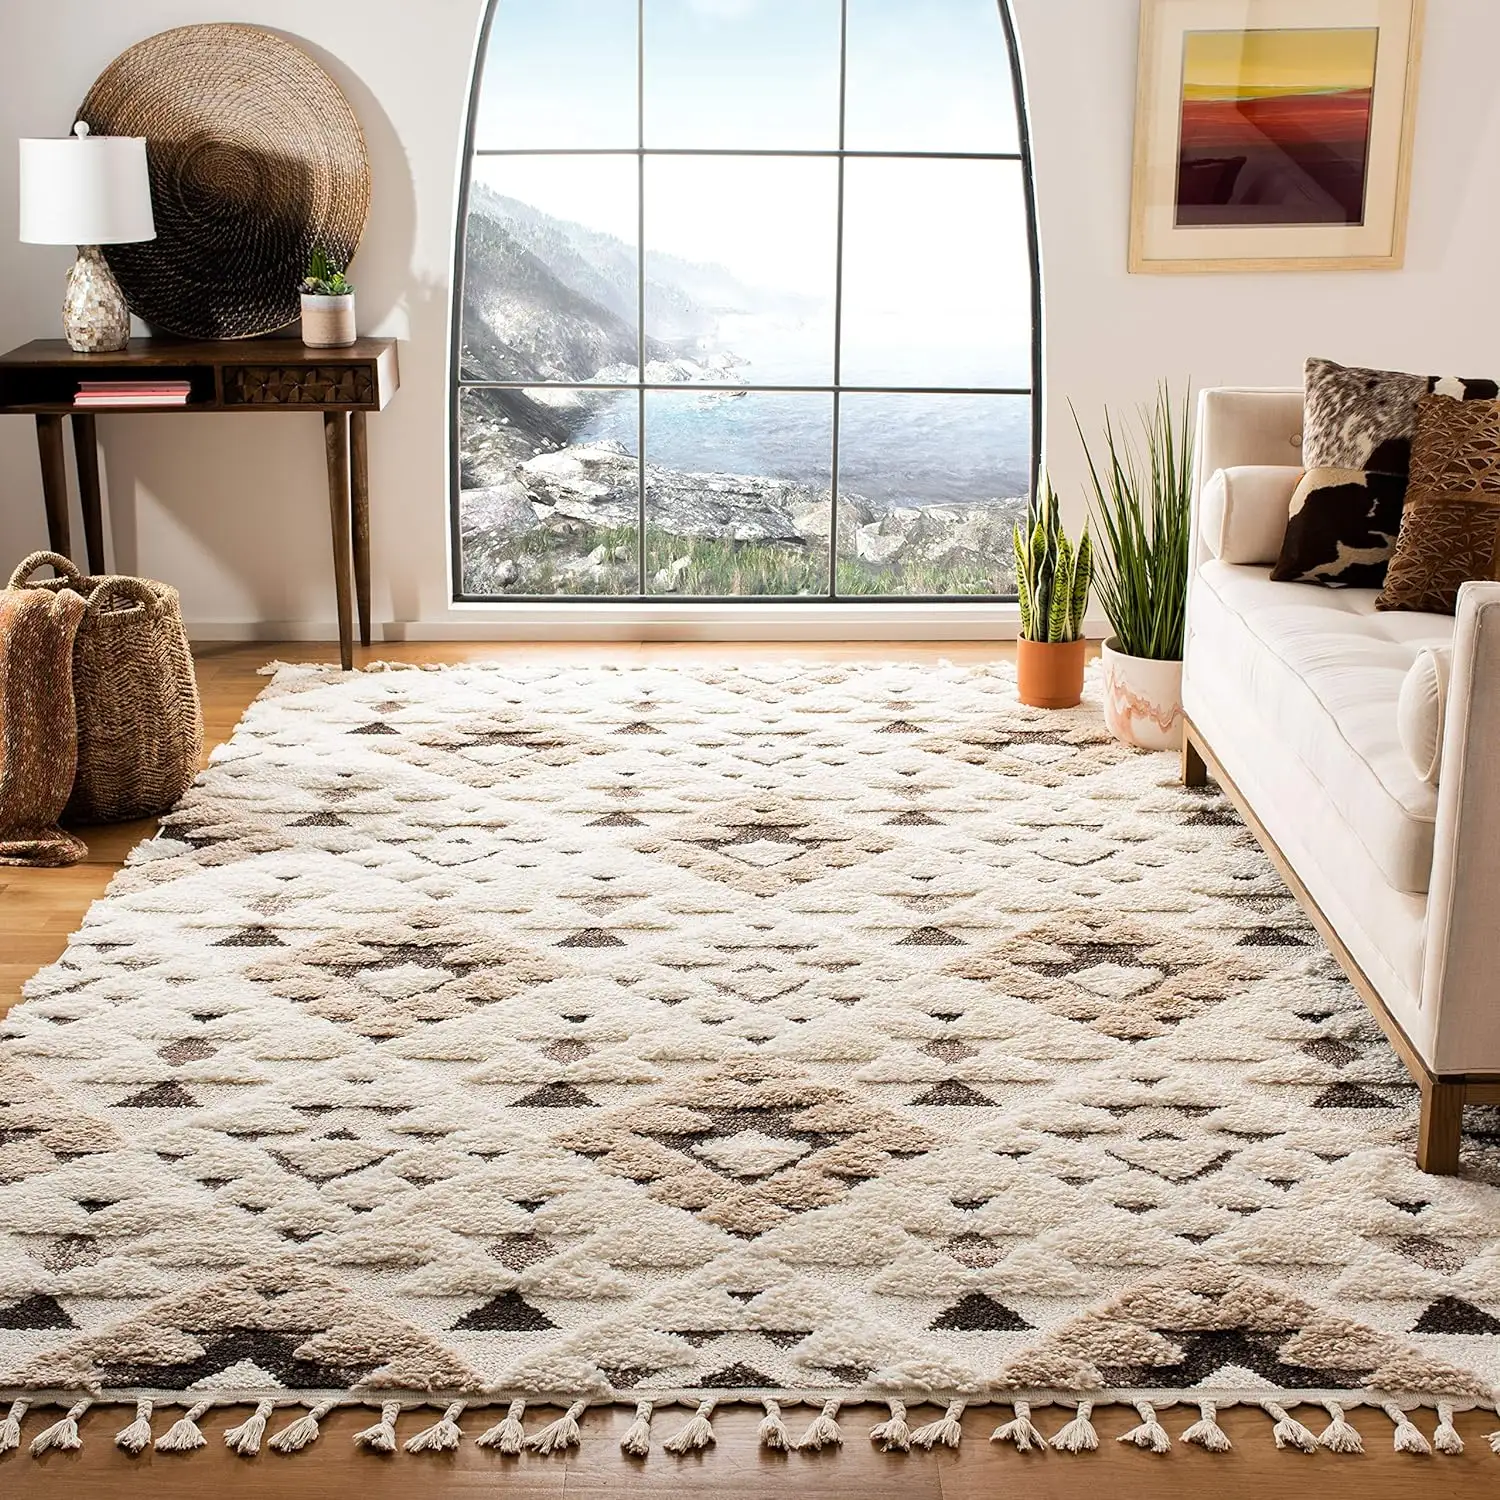 MU nuovo design personalizzato squisito tappeti soggiorno moderno camera da letto tappeto con nappe shag collezione zona marocchino tappeto